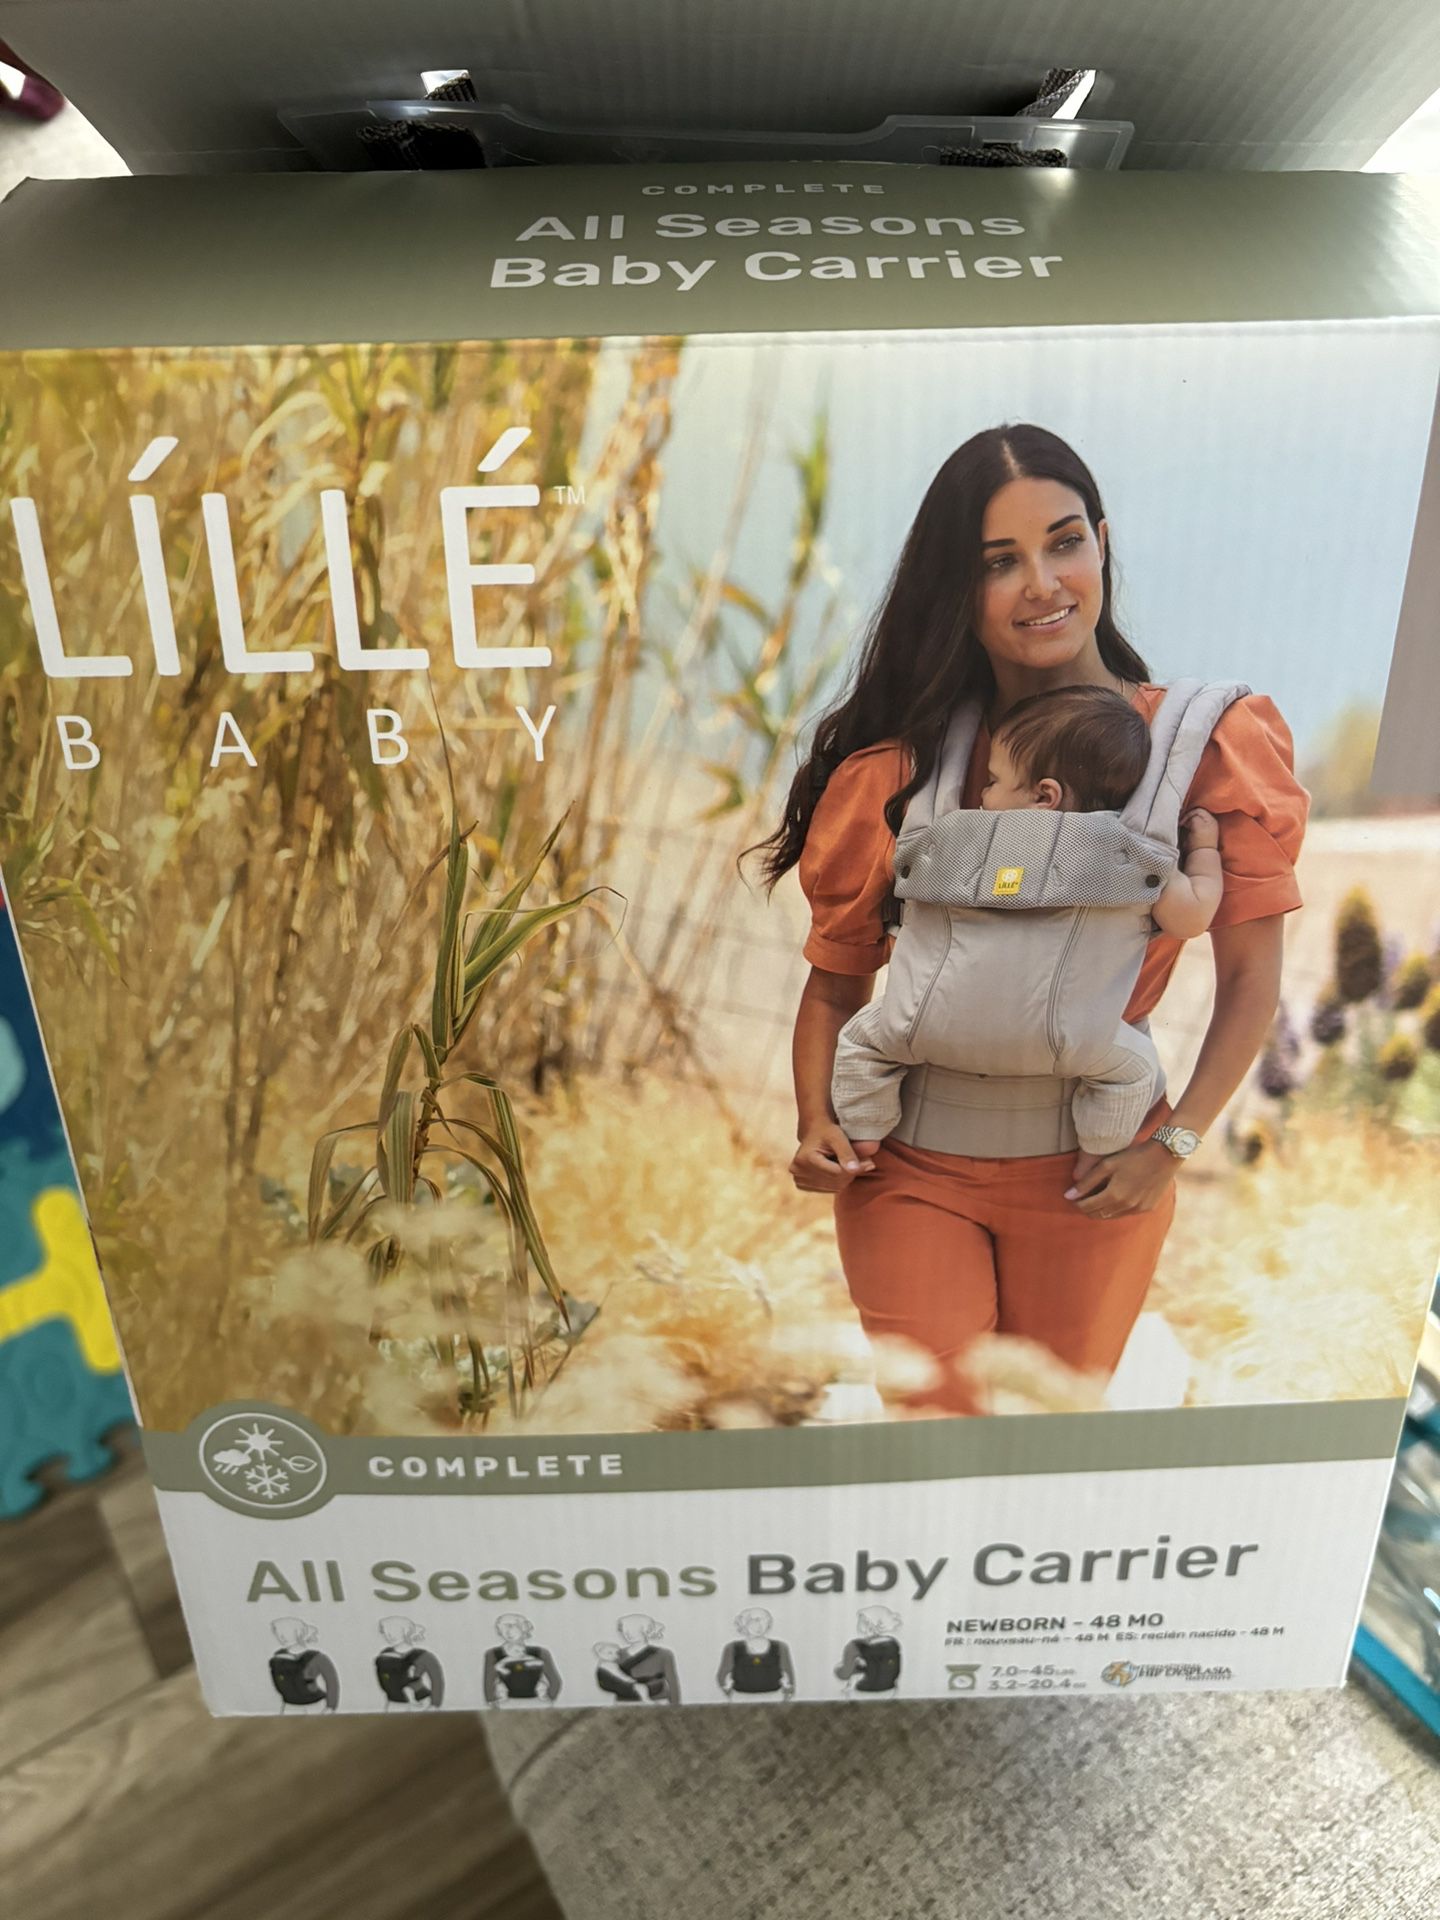 LÍLLÉ Baby Carrier